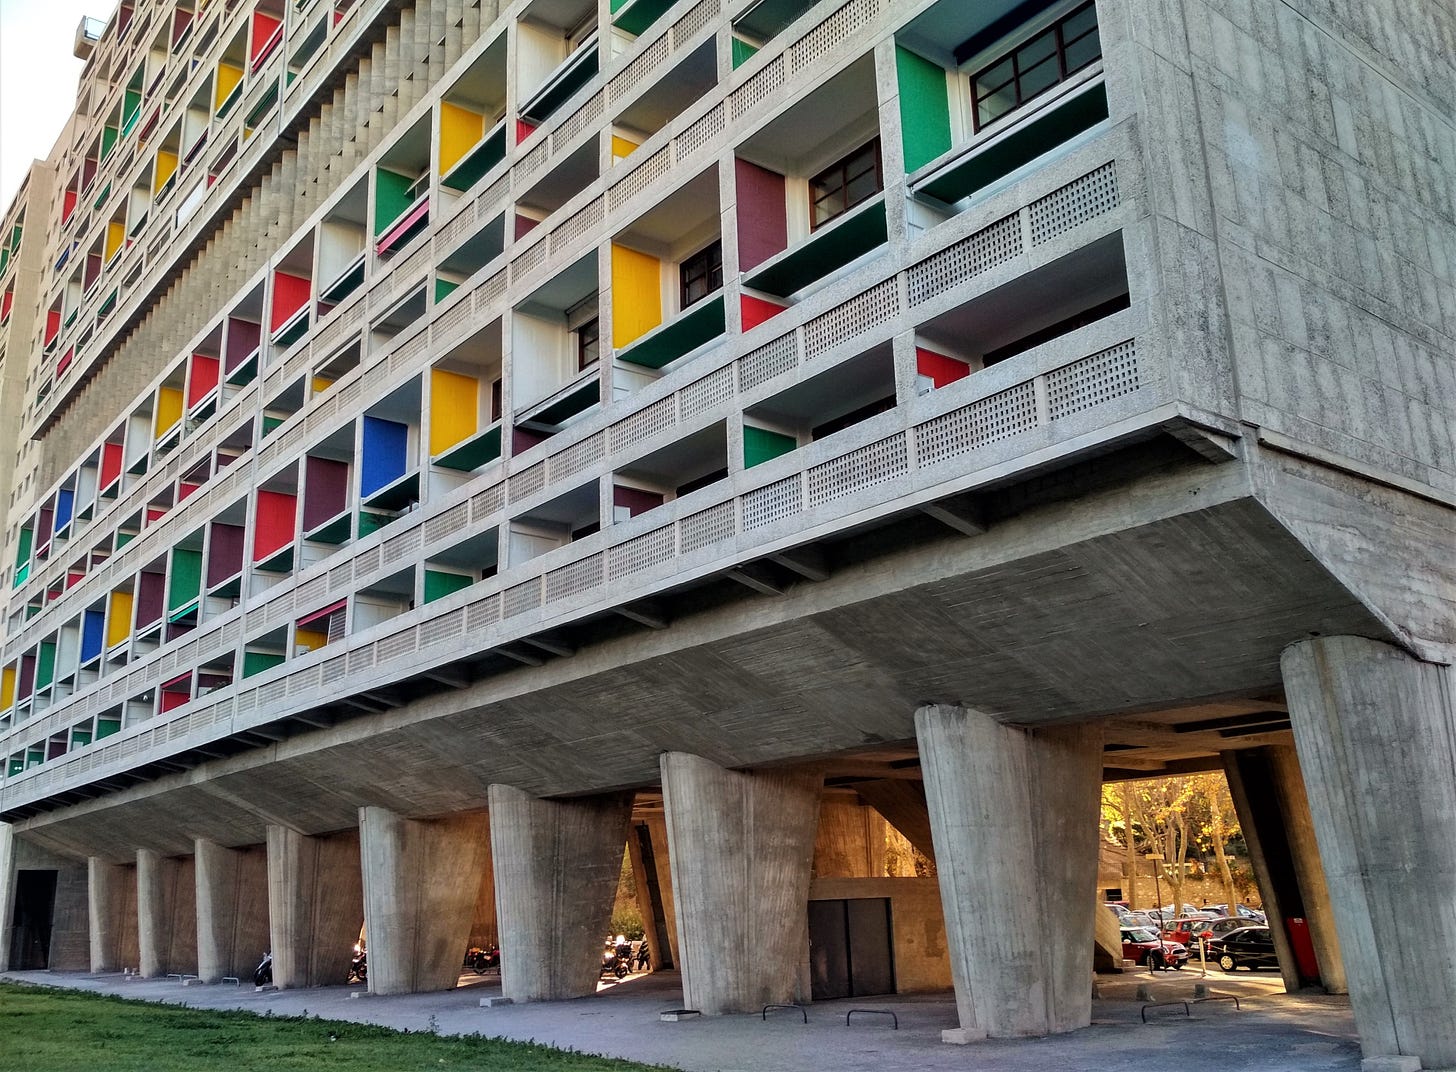 Cité Radieuse Le Corbusier, Marseille